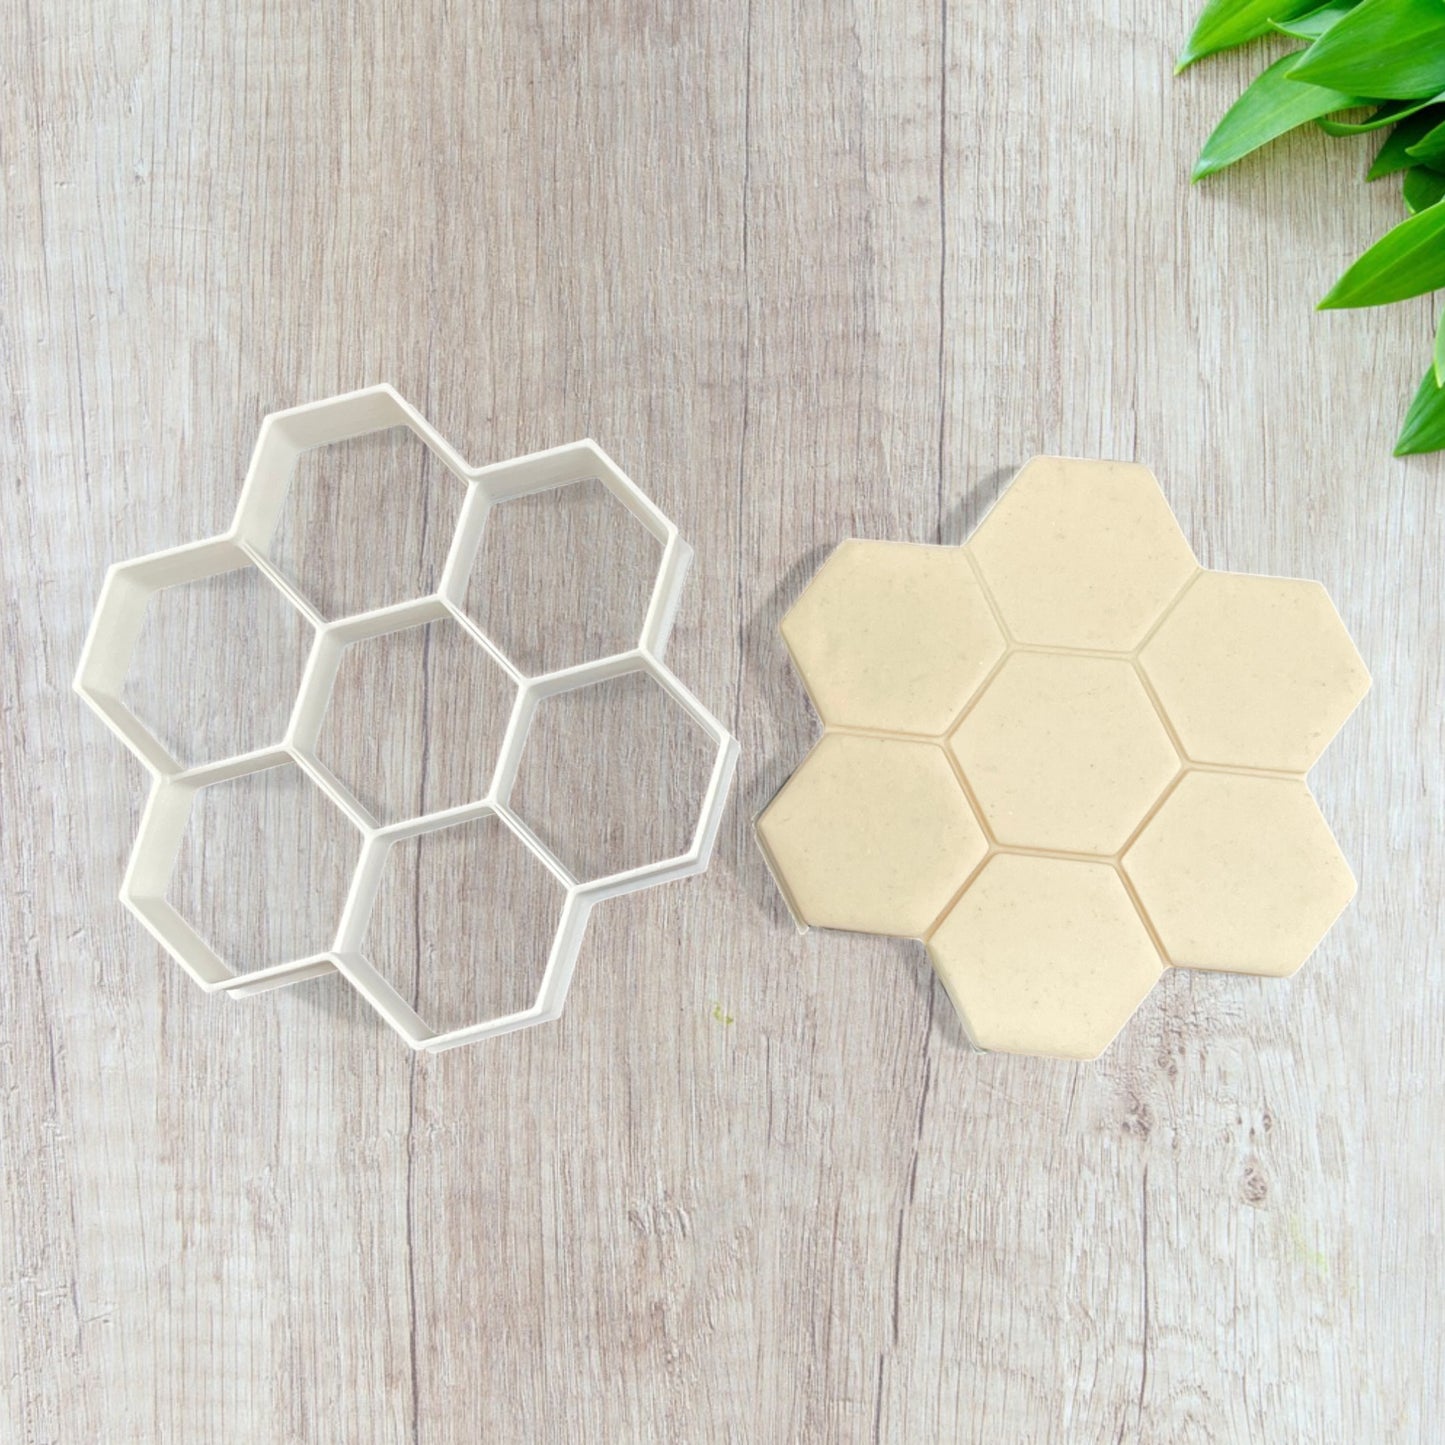 Emporte pièce motif ruche abeille - Forme - pour la réalisaton de biscuit sablé, patisserie, pate à sucre -Décoration gateau-Fait maison- ELACE